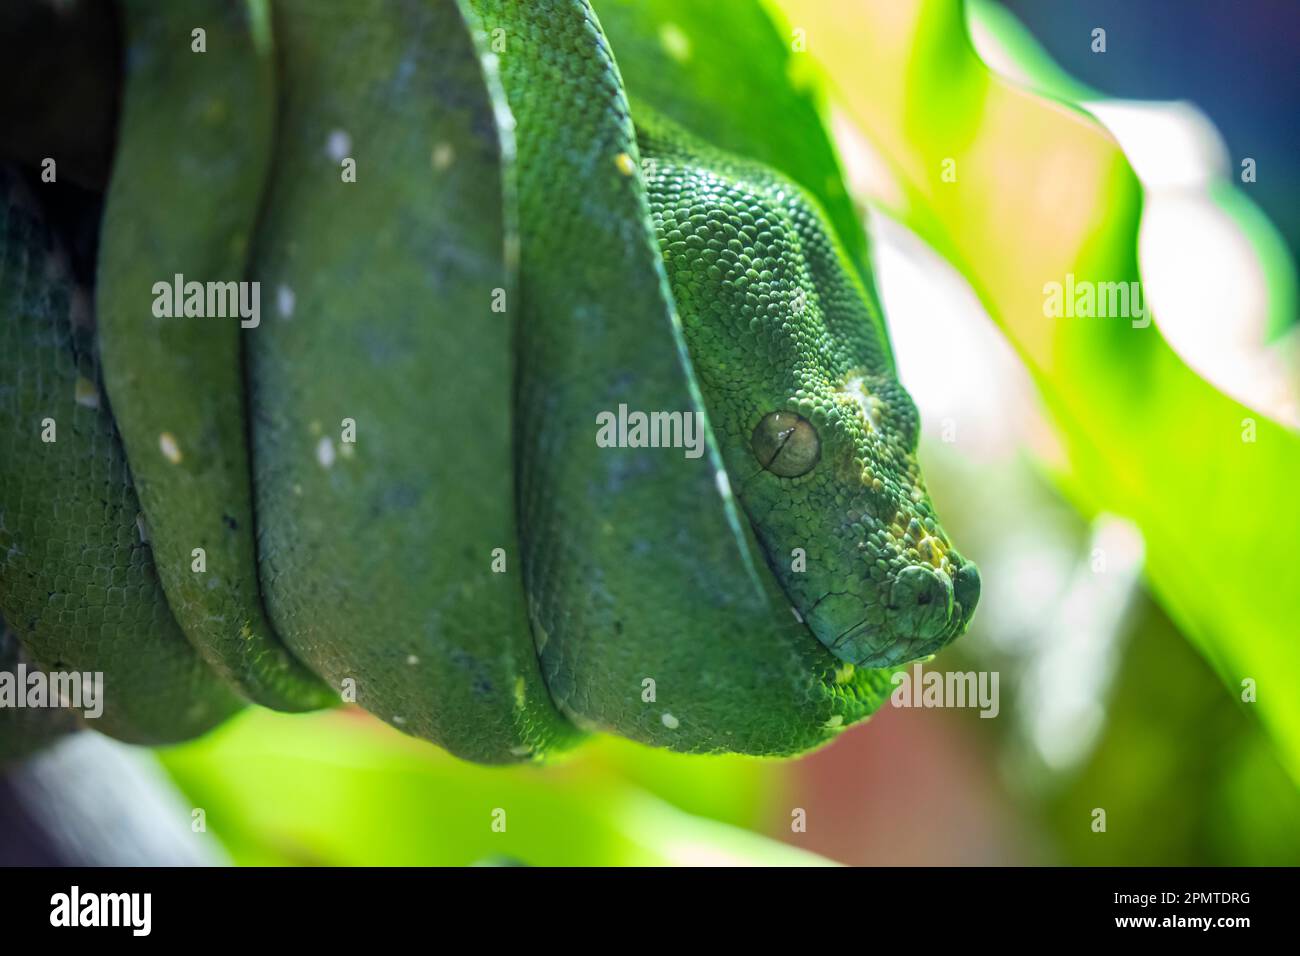 Le python vert (Morelia viridis) est une espèce de serpent de la famille des Pythonidae, un serpent vert vif vivant généralement dans les arbres. Banque D'Images